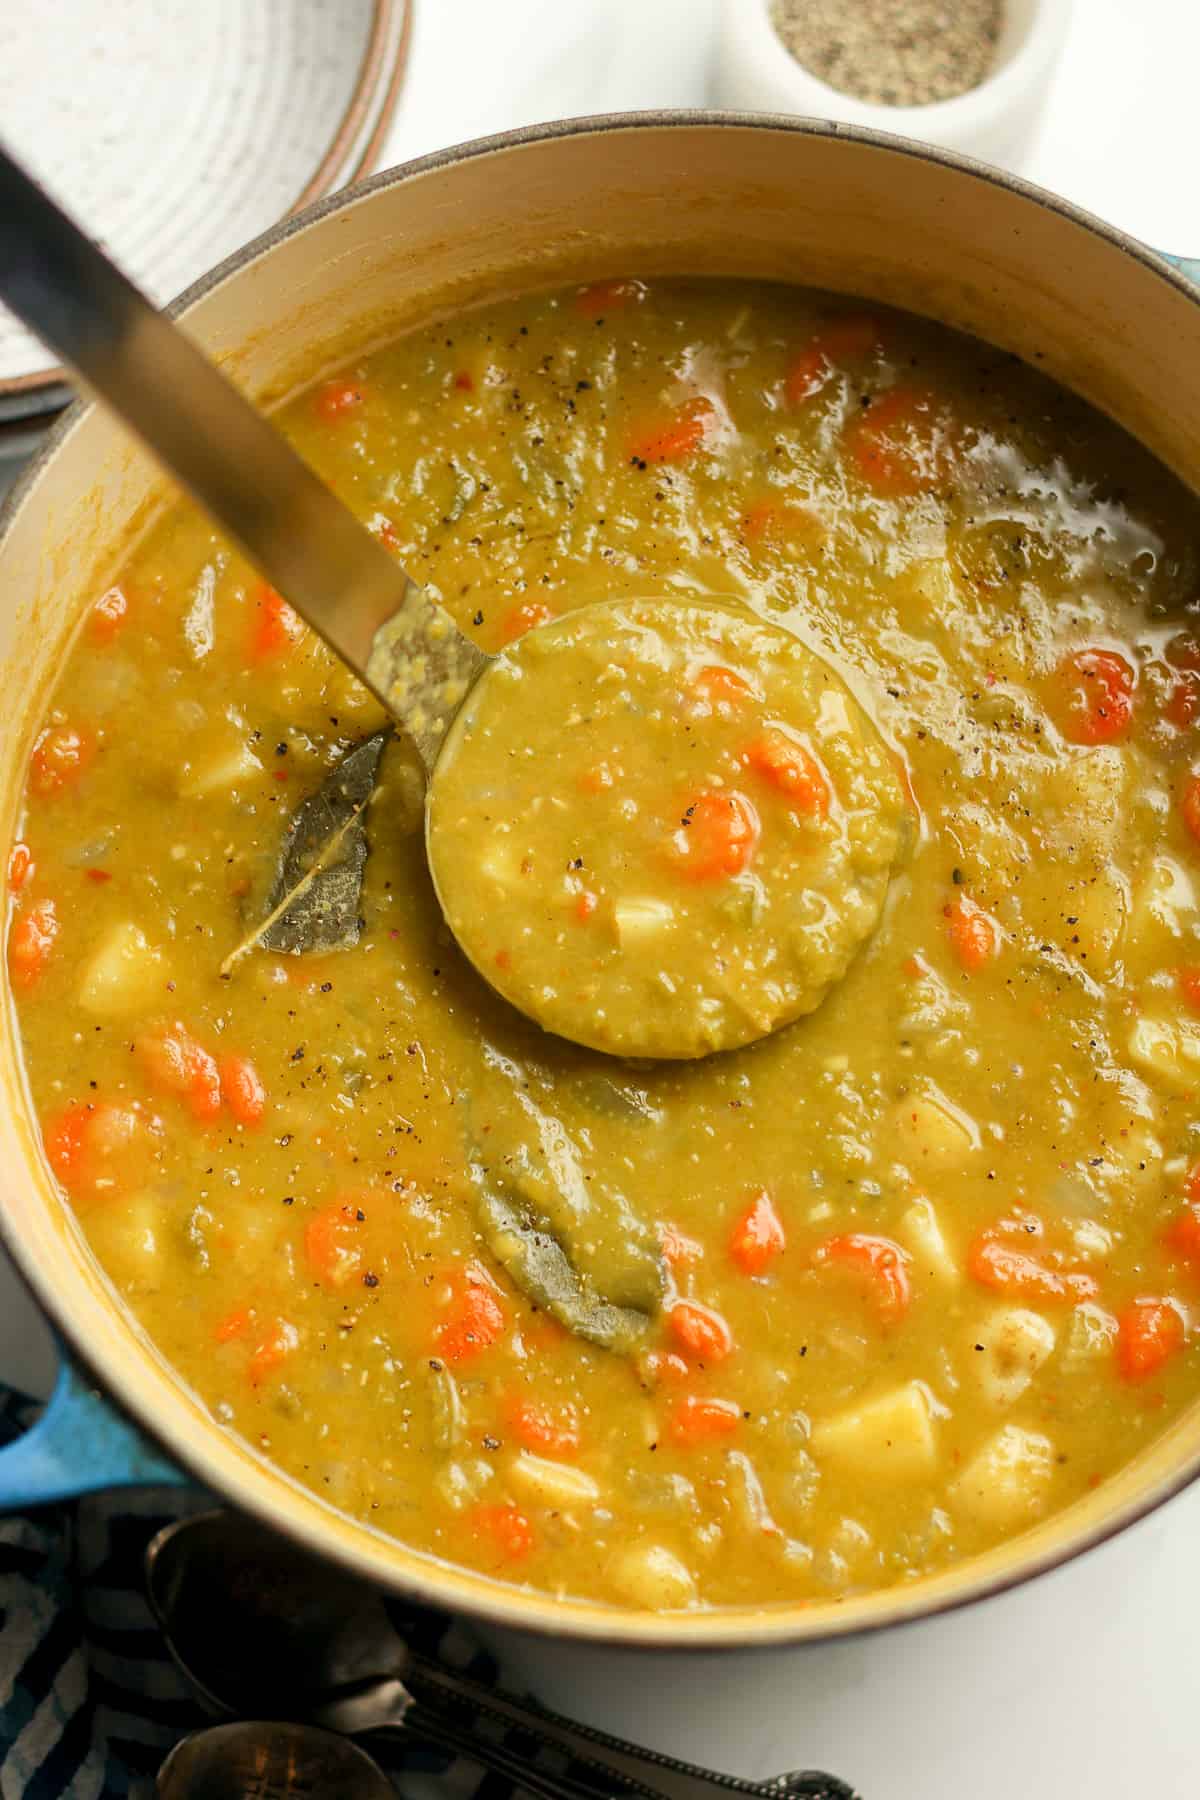 A soup ladle lifting up some split pea vegetable soup.